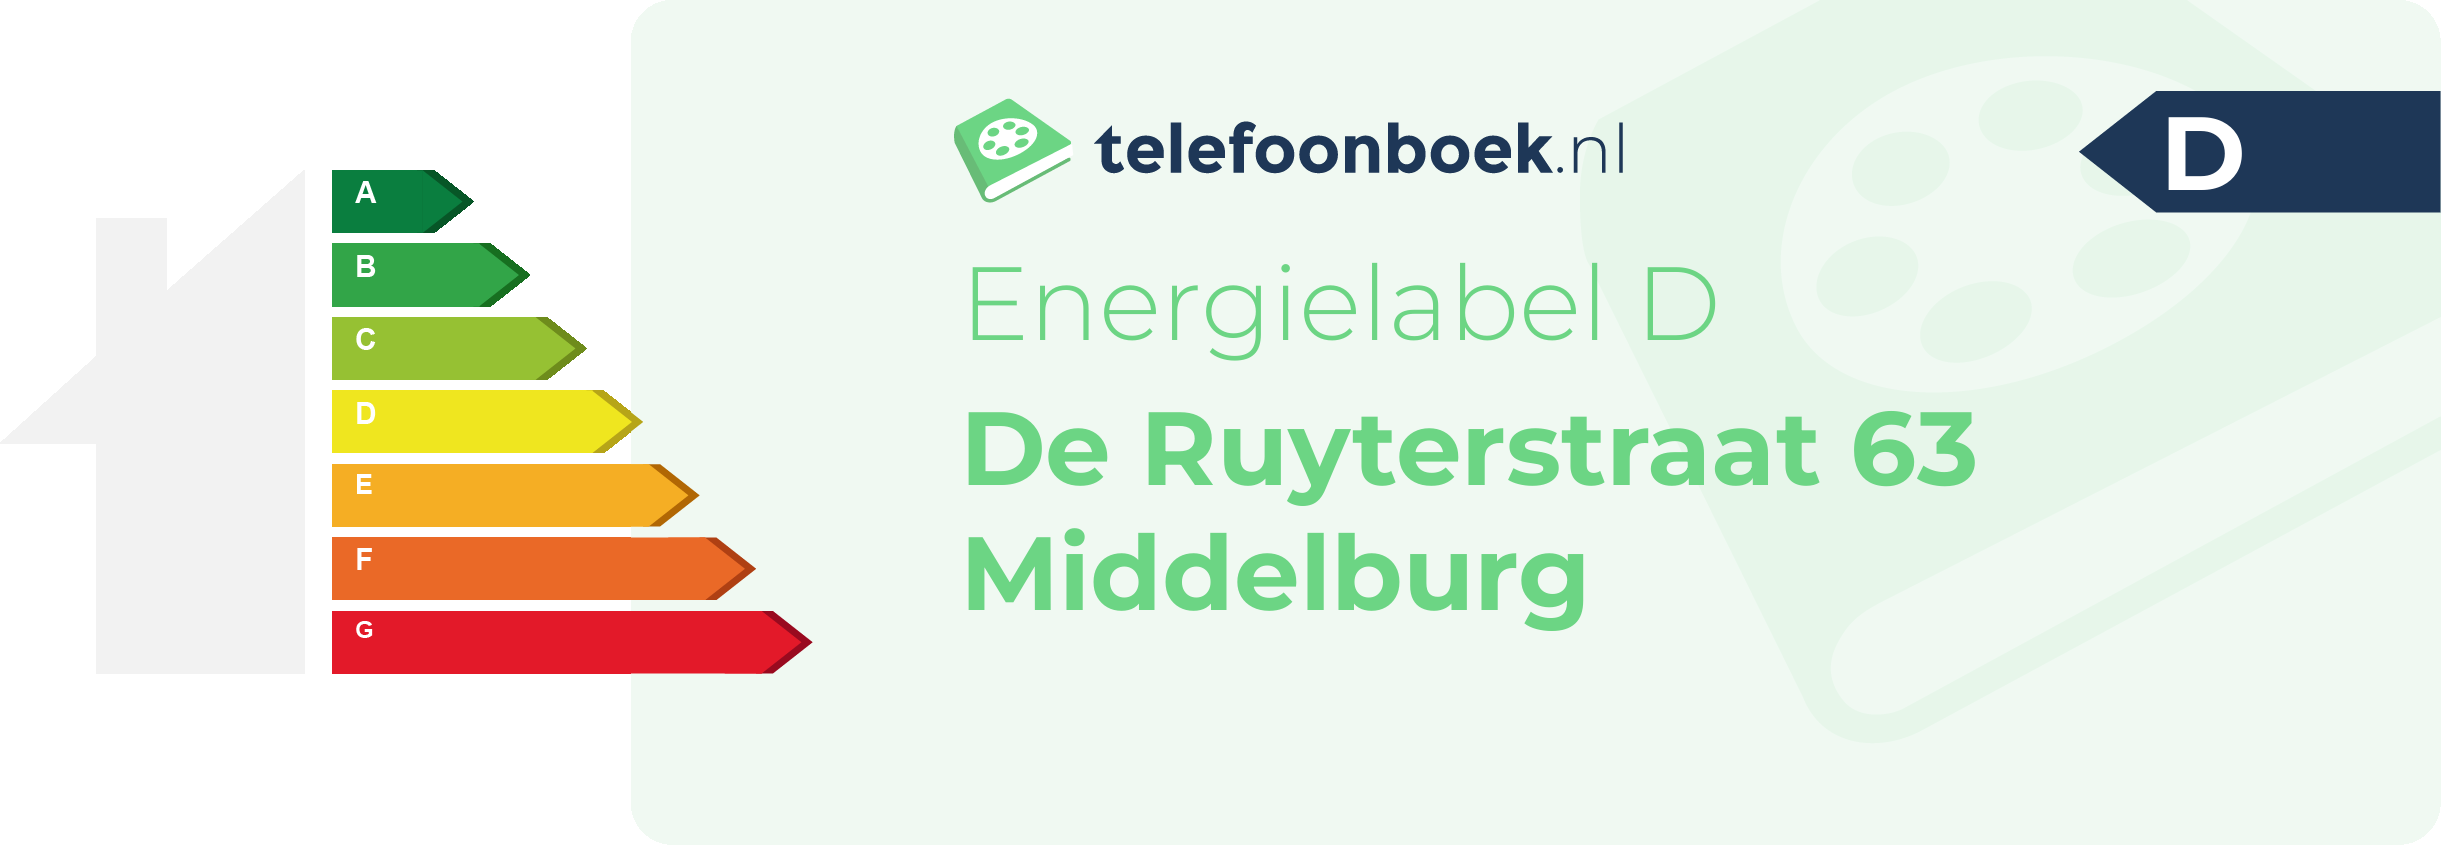 Energielabel De Ruyterstraat 63 Middelburg